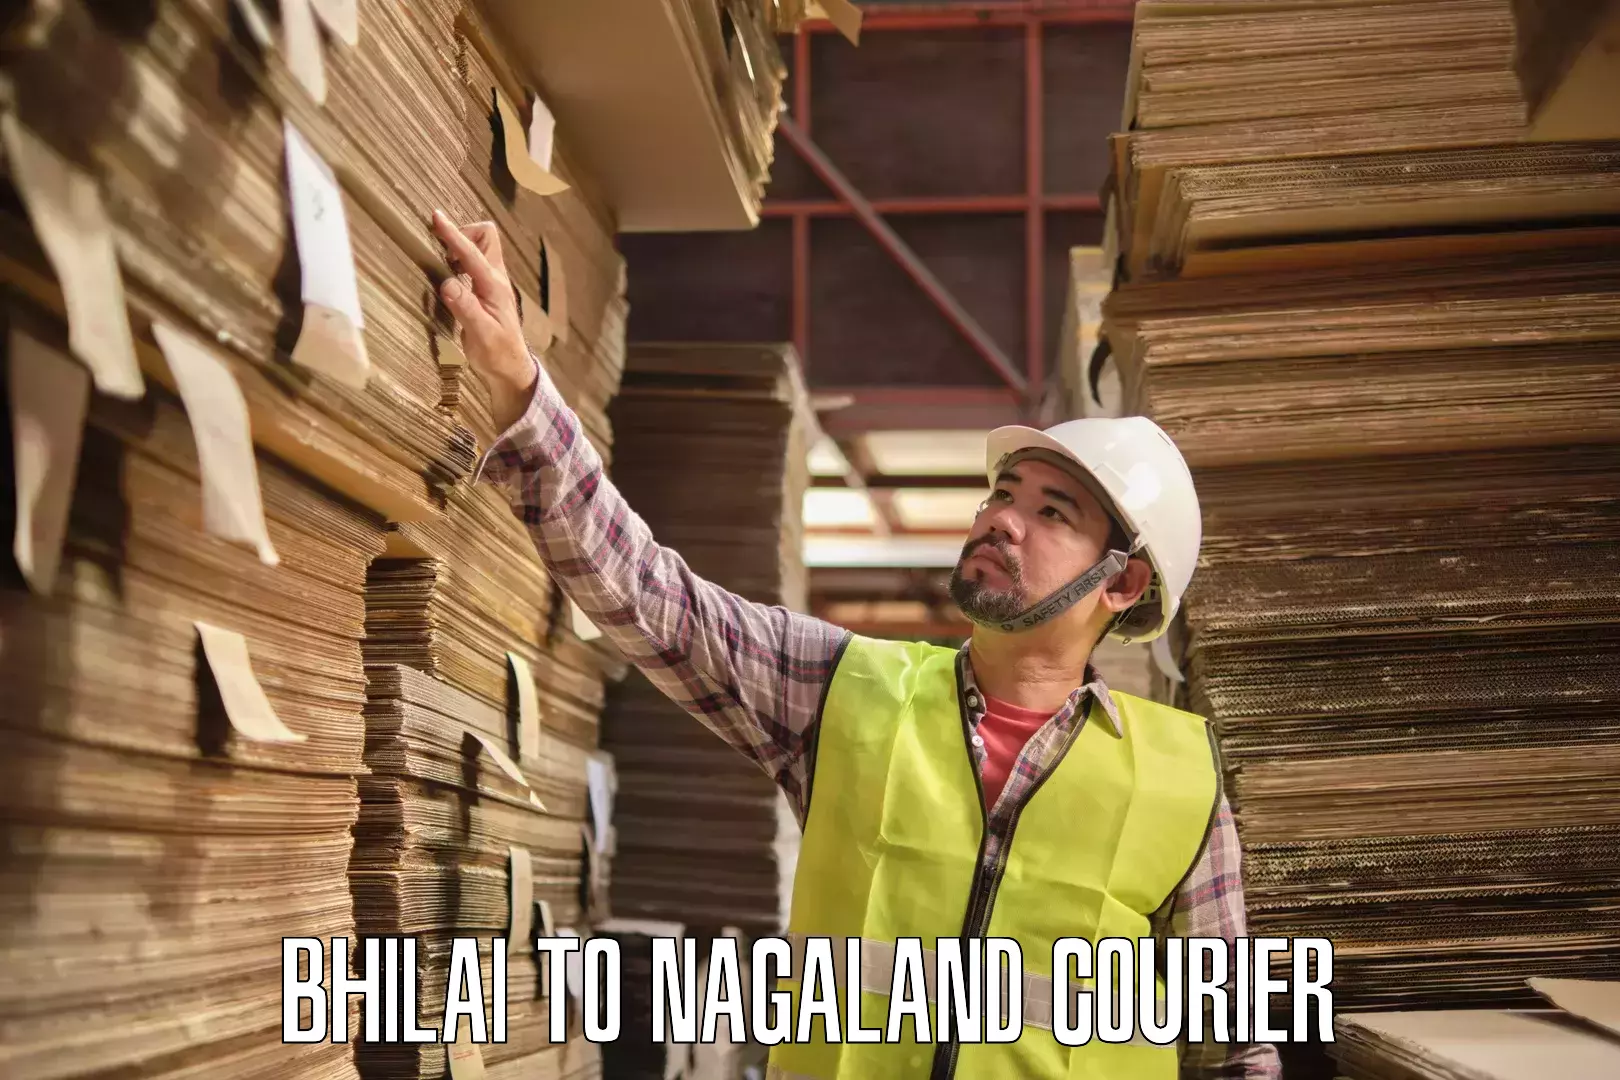 Courier service comparison Bhilai to Dimapur